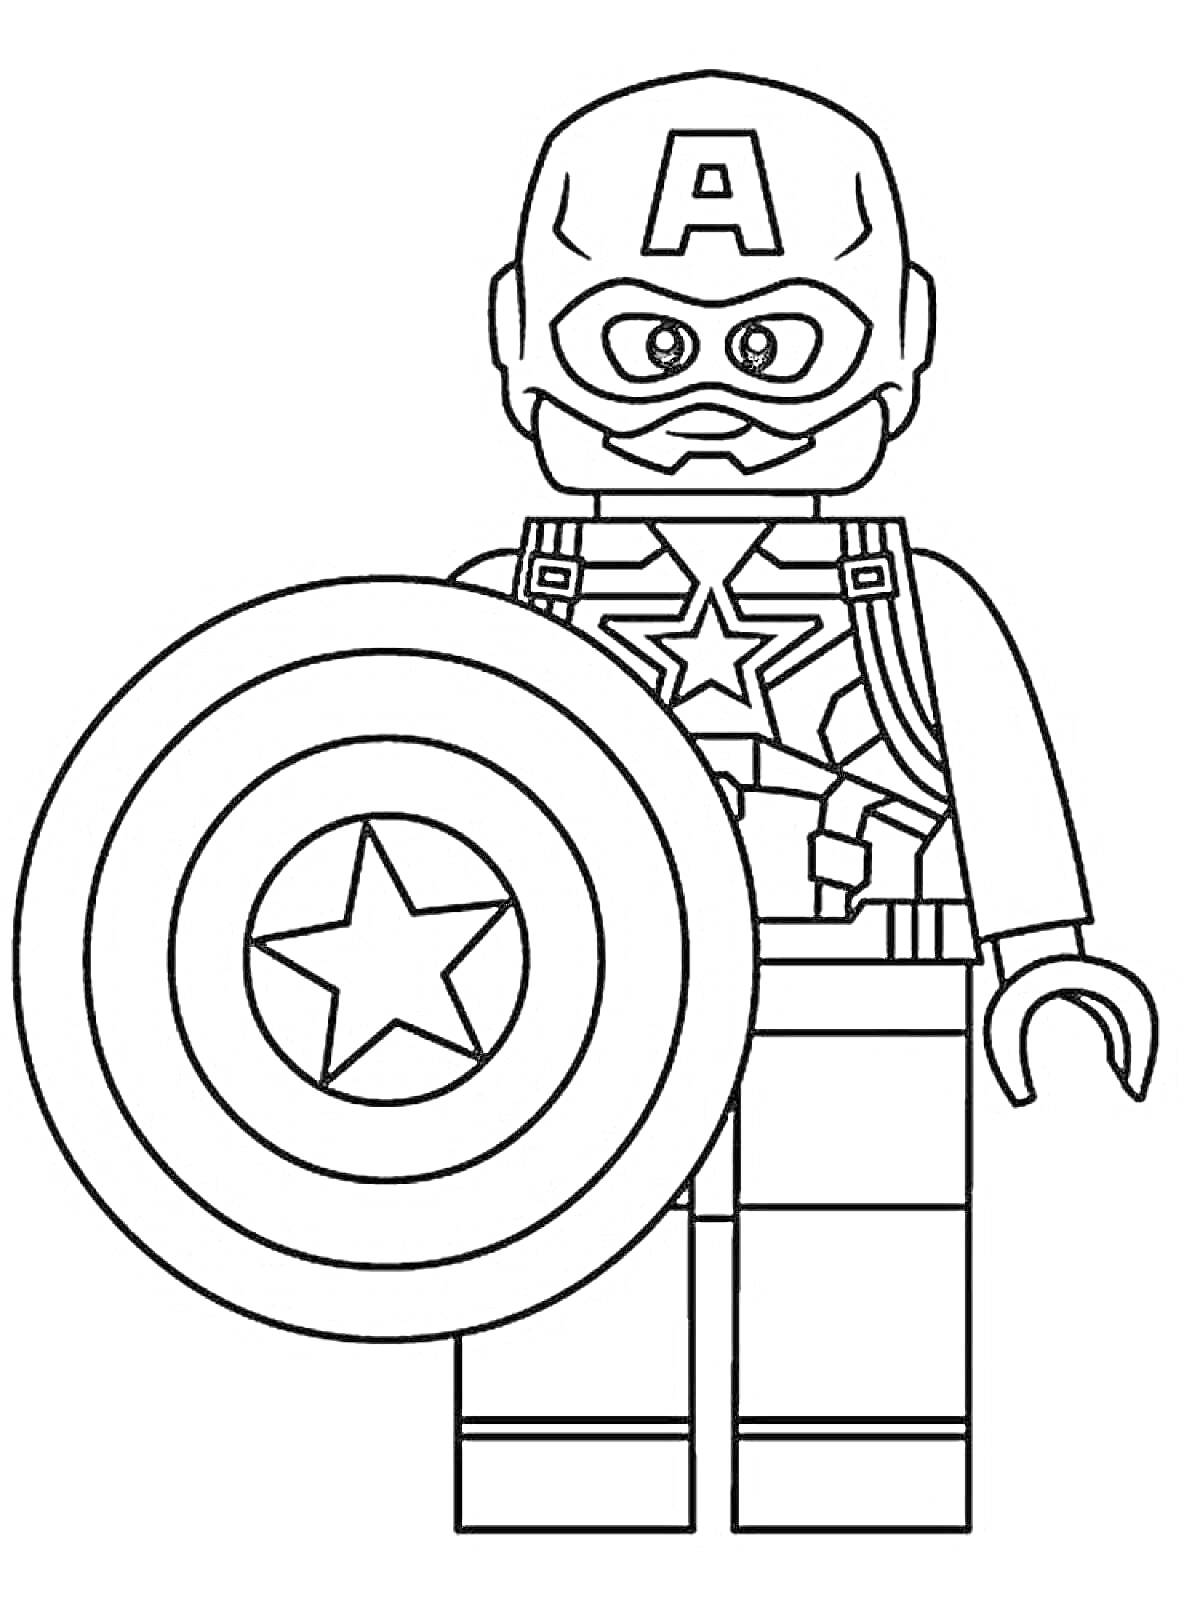 Раскраска Лего Капитан Америка с щитом и костюмом со звездой